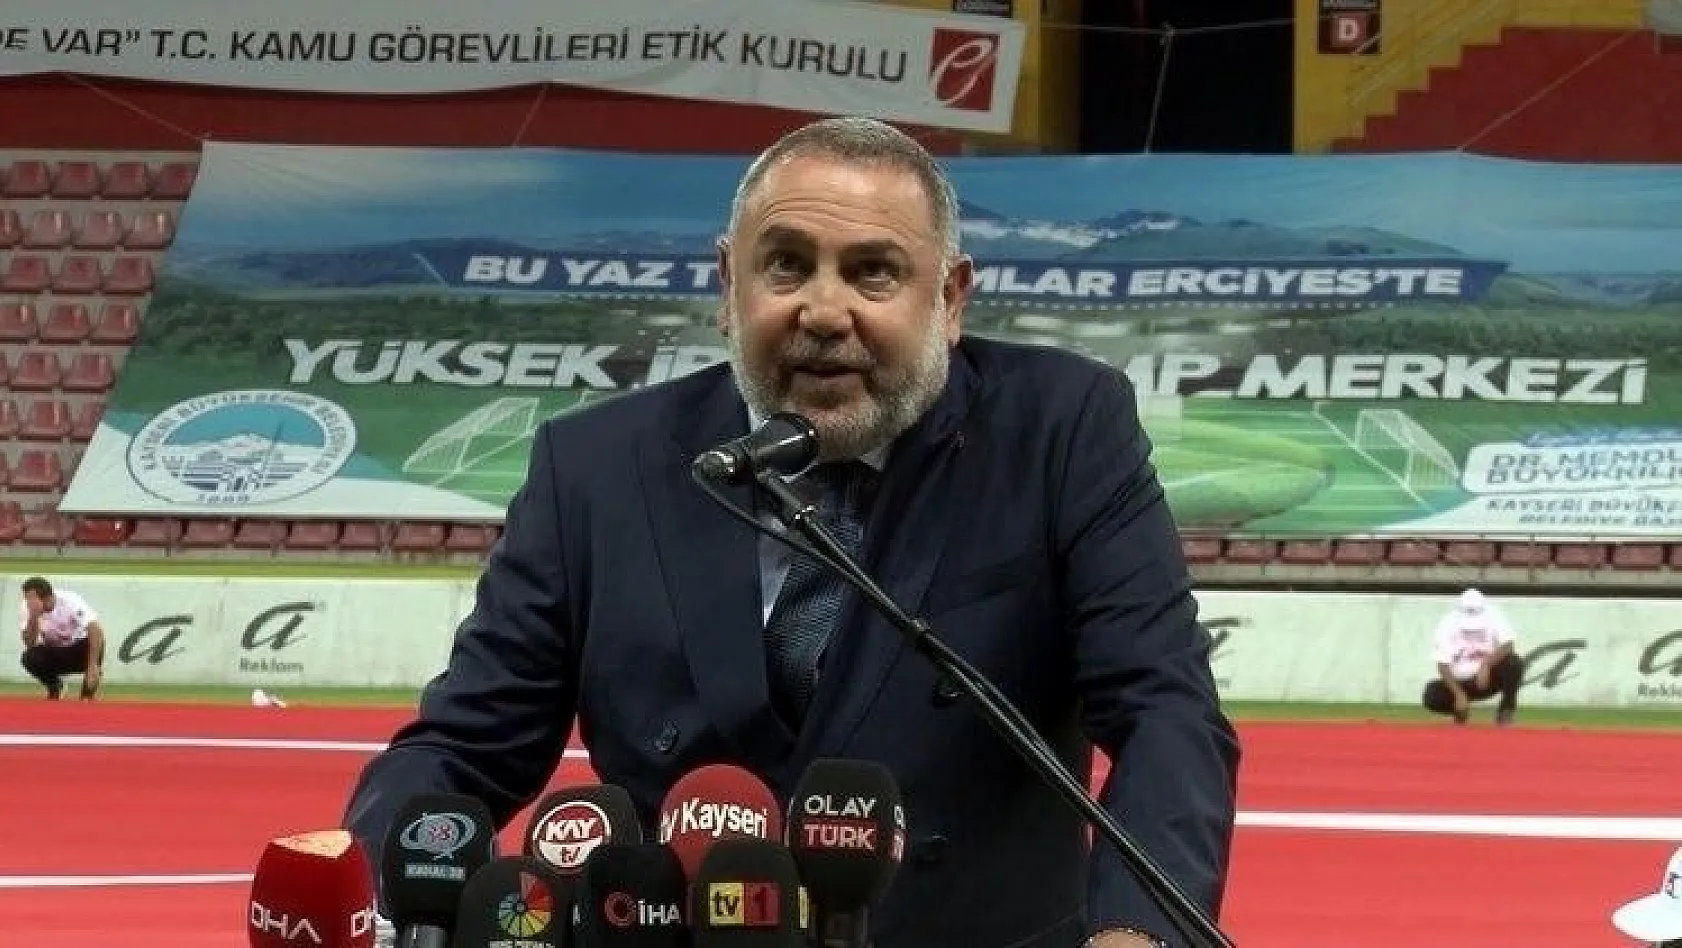 Erciyes Anadolu Holding CEO'su Ertekin: 'Biz, Kayserispor'a destek verdik'
